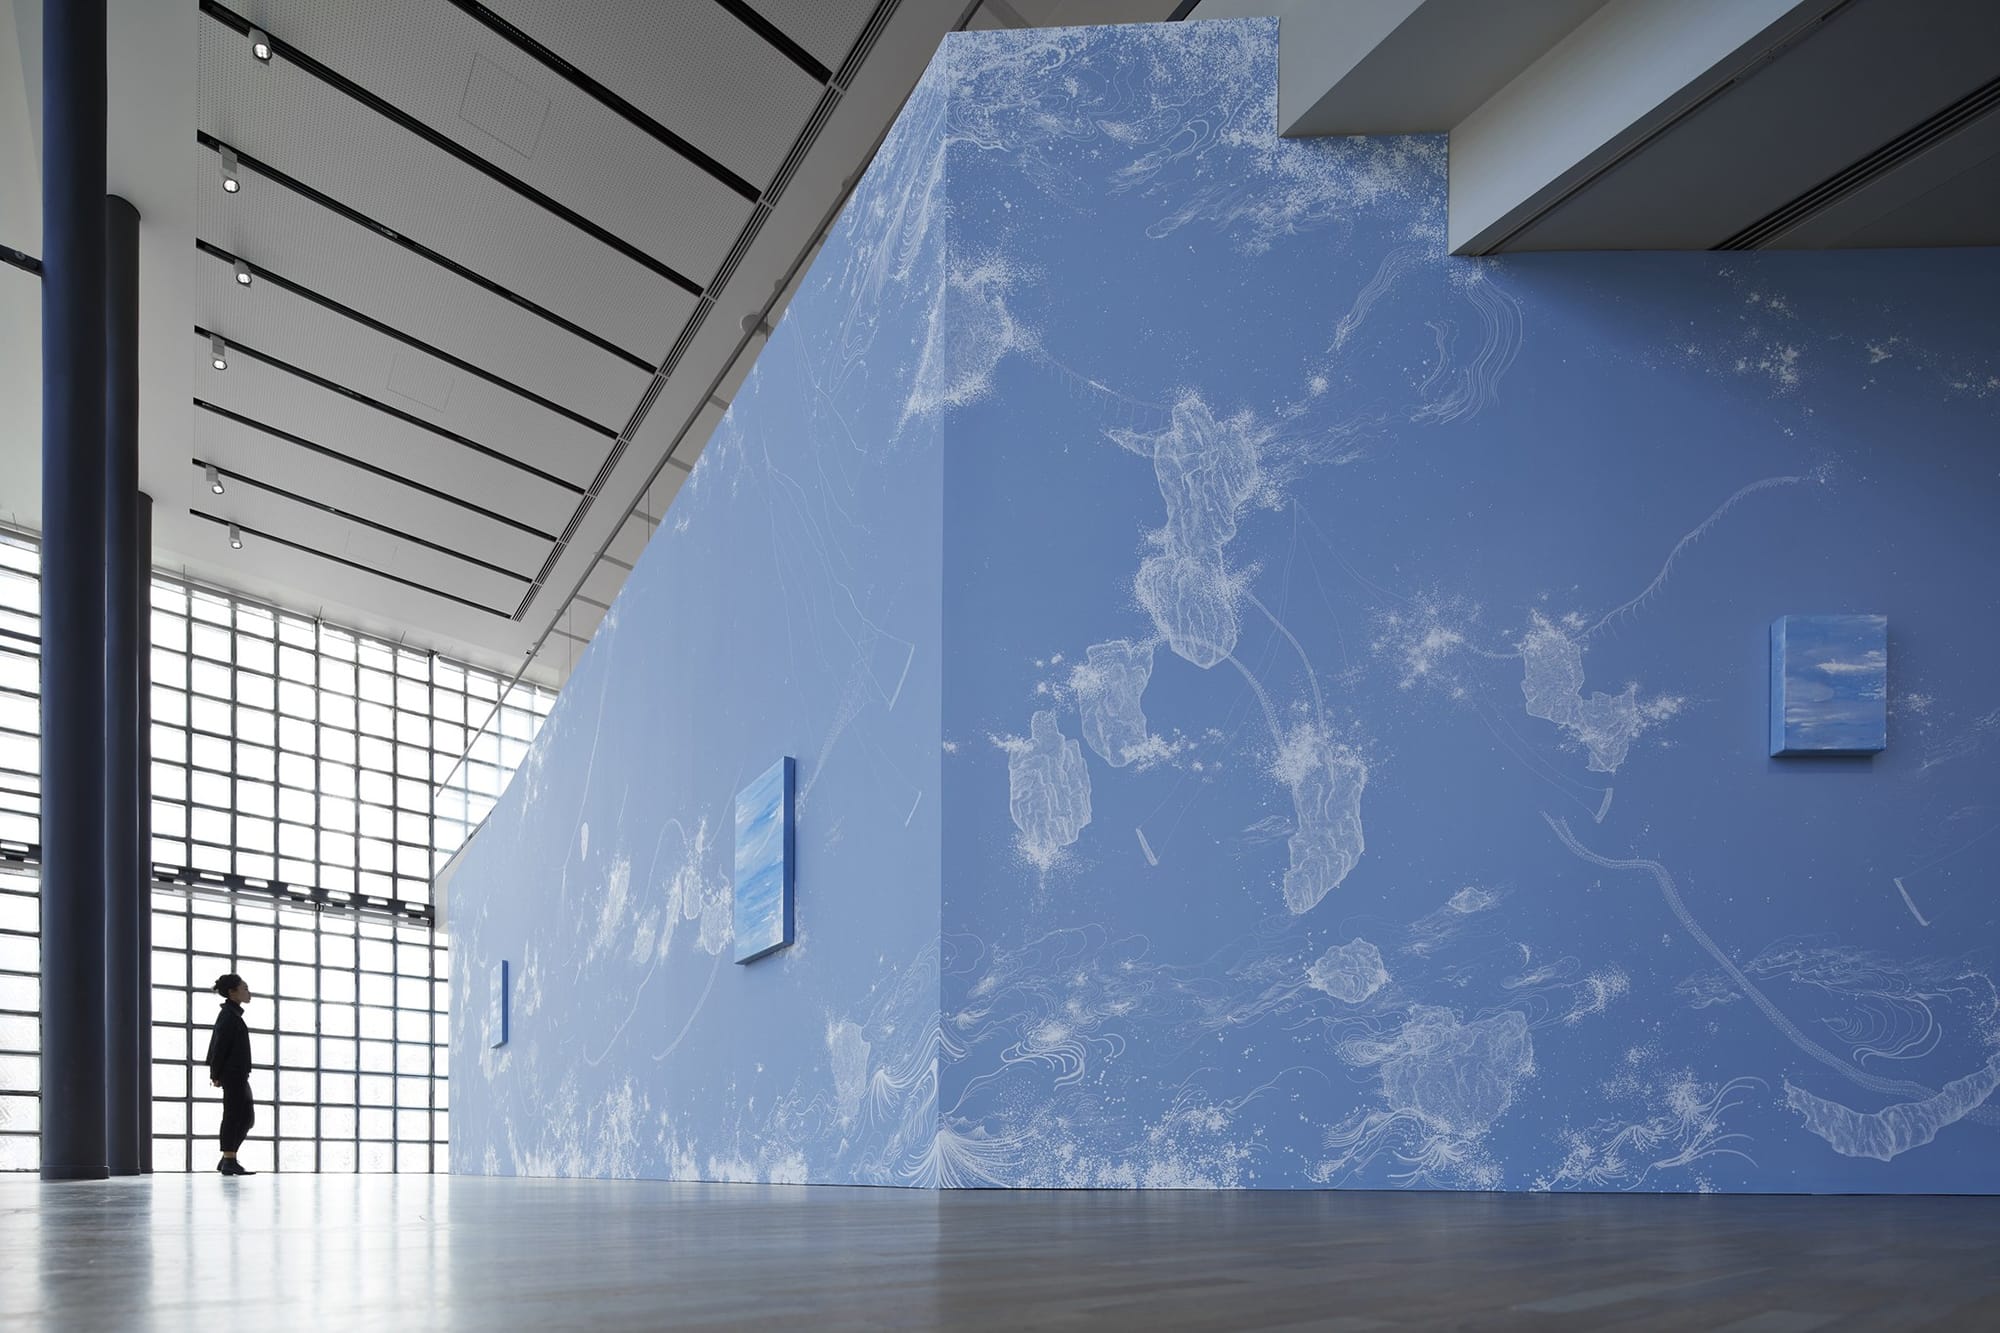 壁一面に広がる宇宙を象徴的に表すブルーをベースとして、繊細なラインで波などのモチーフが描き出されている。  展示風景/ Installation viewコズミック・ガーデン| 2020 | マーカー、アクリル、ペンキ、カンヴァス、木パネル、カーペット、スピーカー Cosmic Garden | 2020 | Permanent pen, acrylic, paint, wood panel, carpet, speaker ©Nacása & Partners Inc. / Courtesy of Fondation d’entreprise Hermès